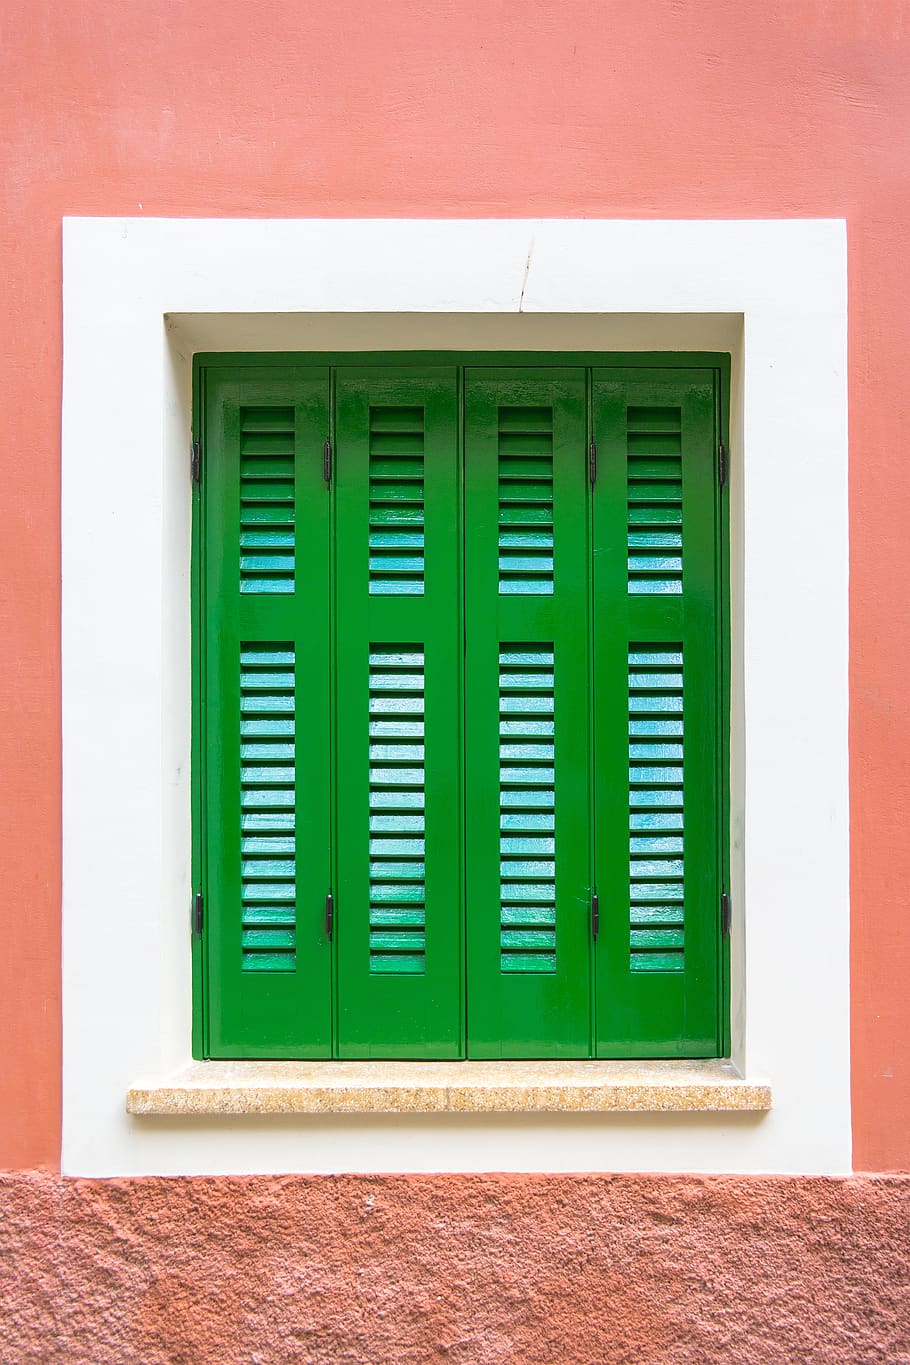 verde, janela, quadro, fechado, obturador, vermelho, parede, cor verde, estrutura construída, parede - característica de construção